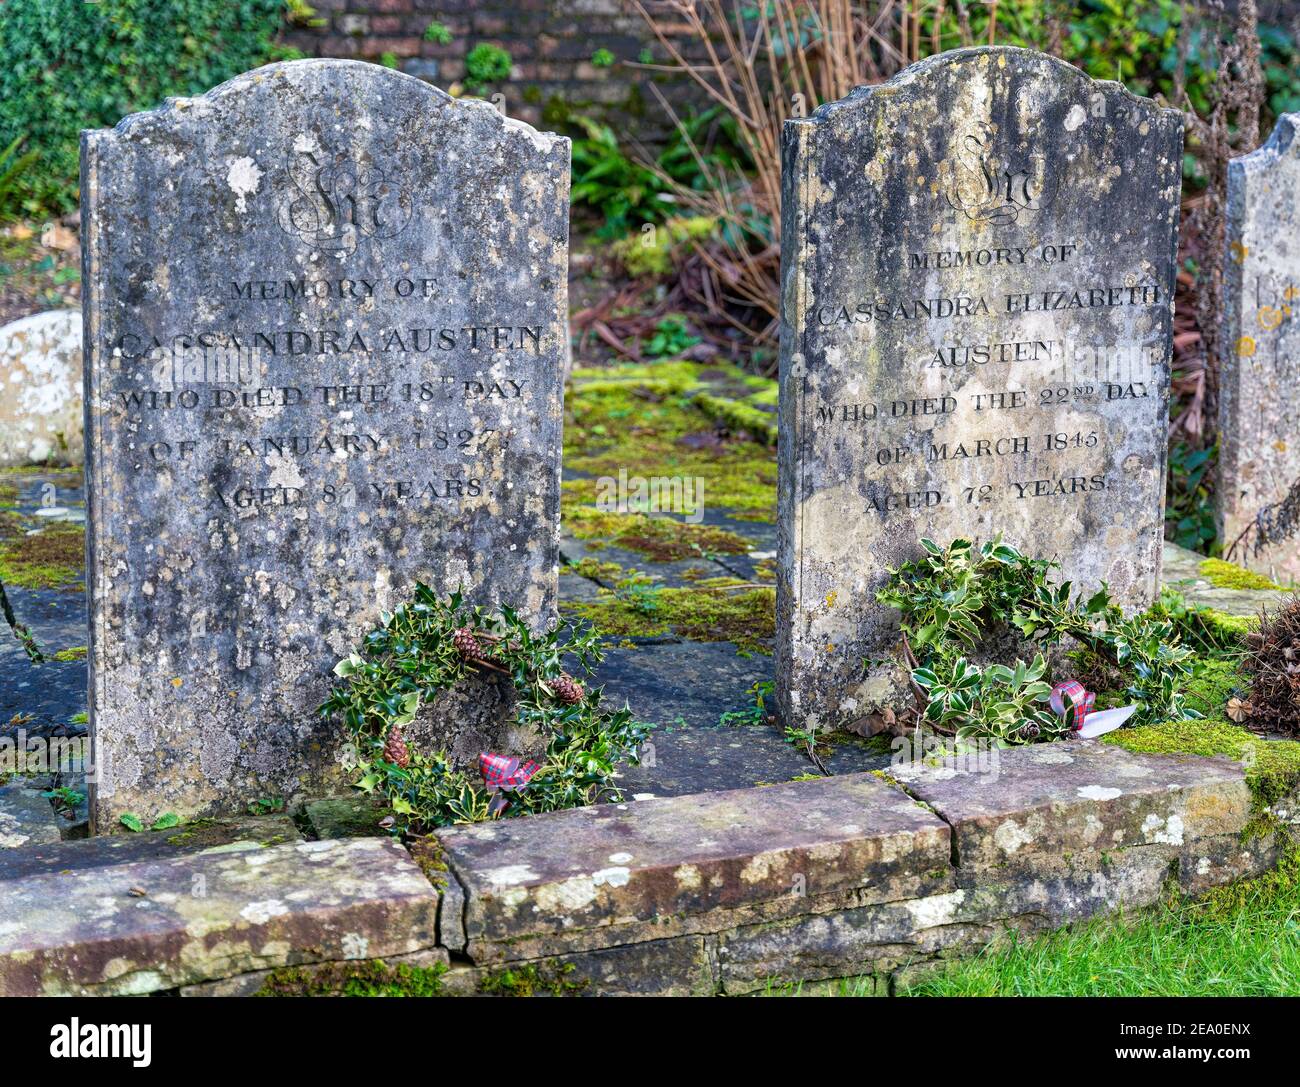 Graves of Cassandra & Cassandra Austen - Mother and Sister of Jane Austen Stock Photo